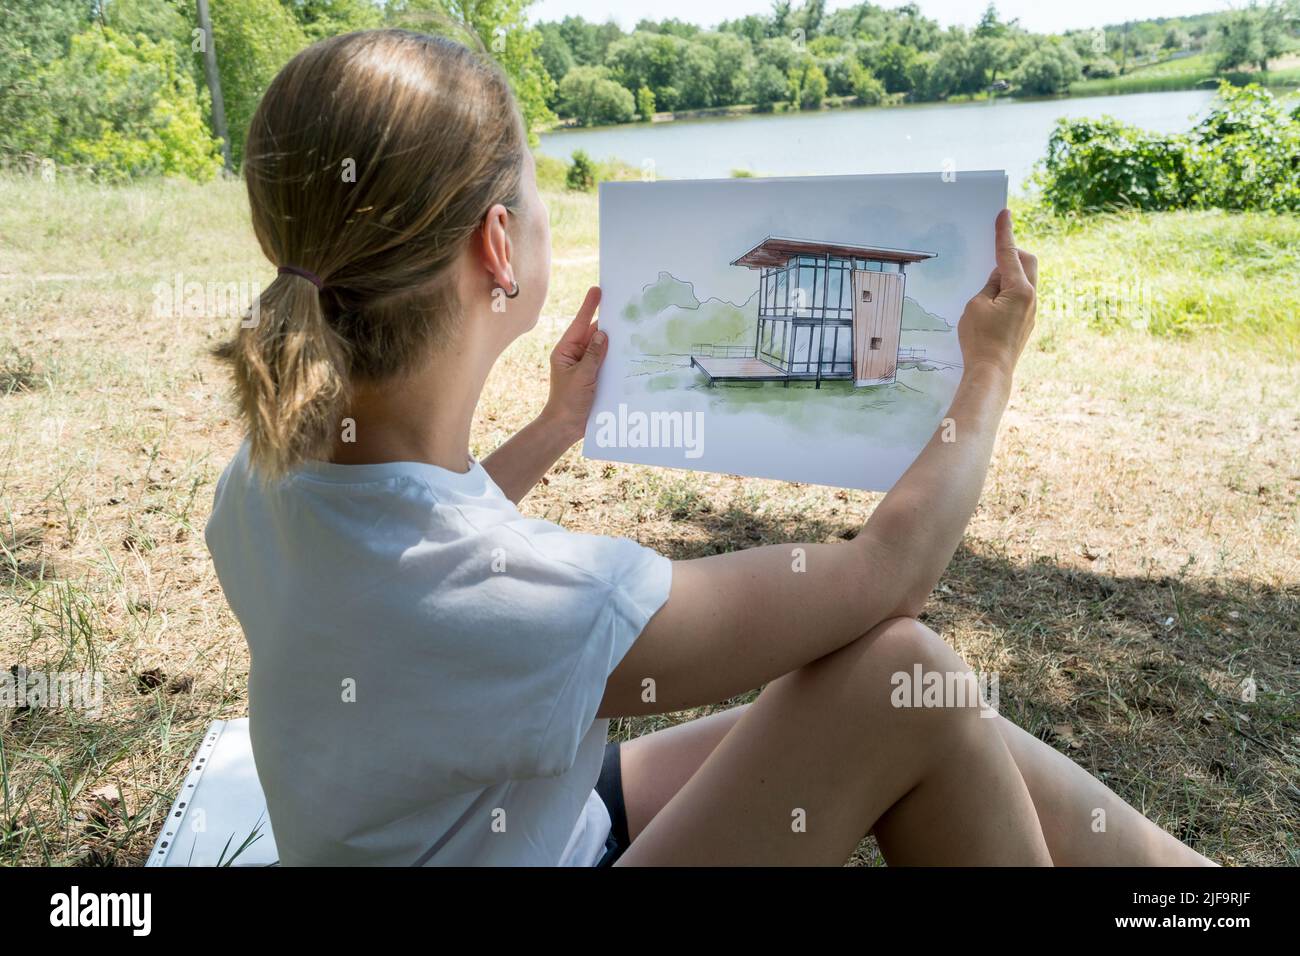 Zeitgenössisches Hausdesign Handgezeichnete Skizze in den Händen von Architekt. Architektonisches Designkonzept Stockfoto